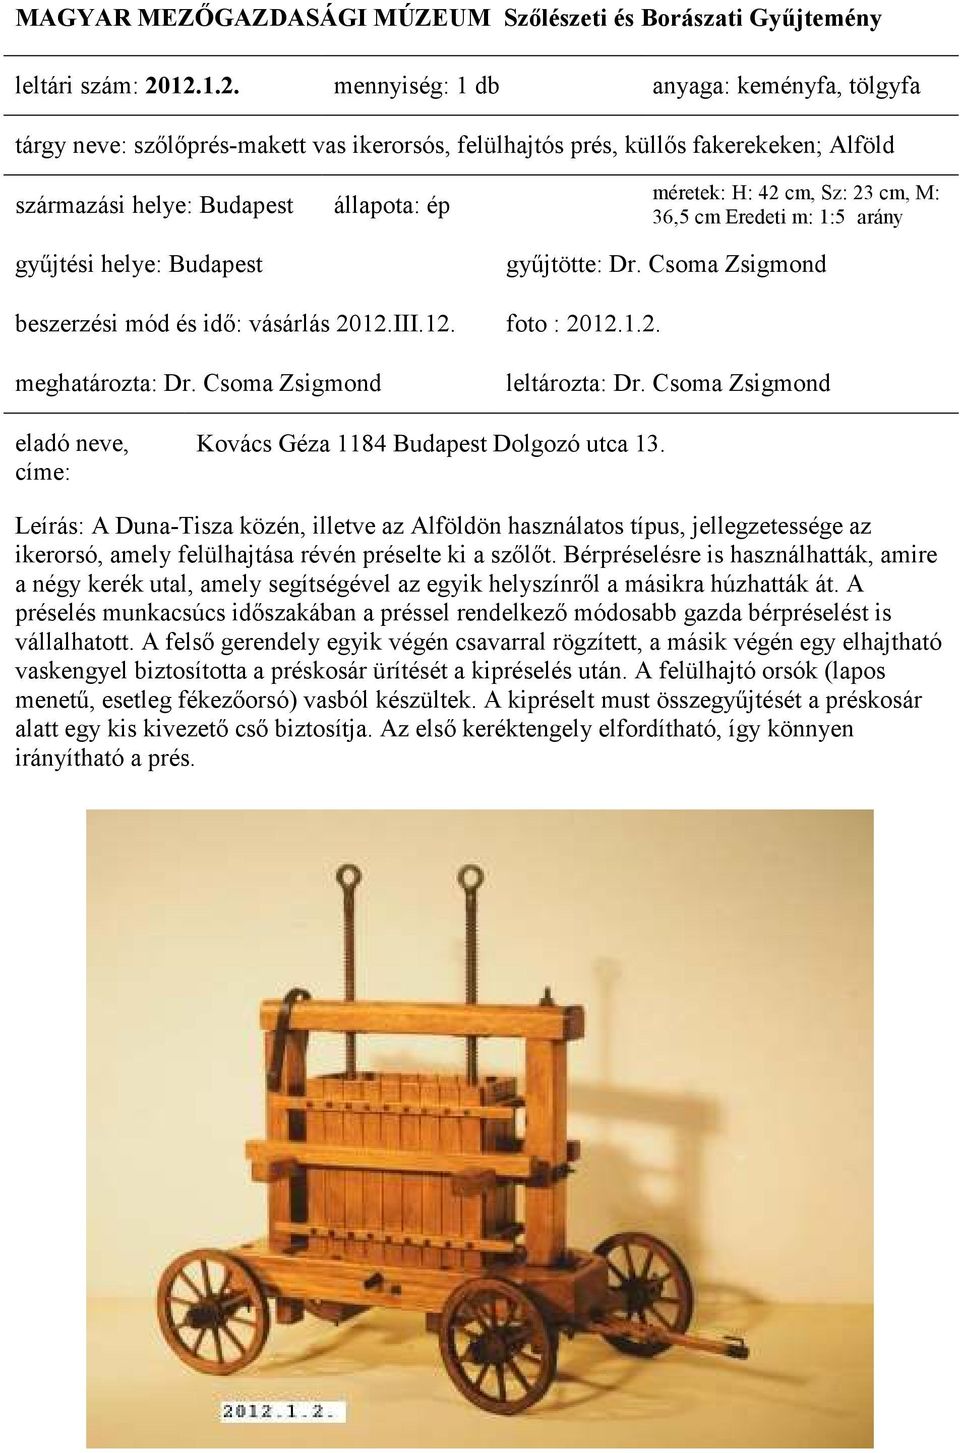 arány beszerzési mód és idı: vásárlás 2012.III.12. foto : 2012.1.2. Kovács Géza 1184 Budapest Dolgozó utca 13.